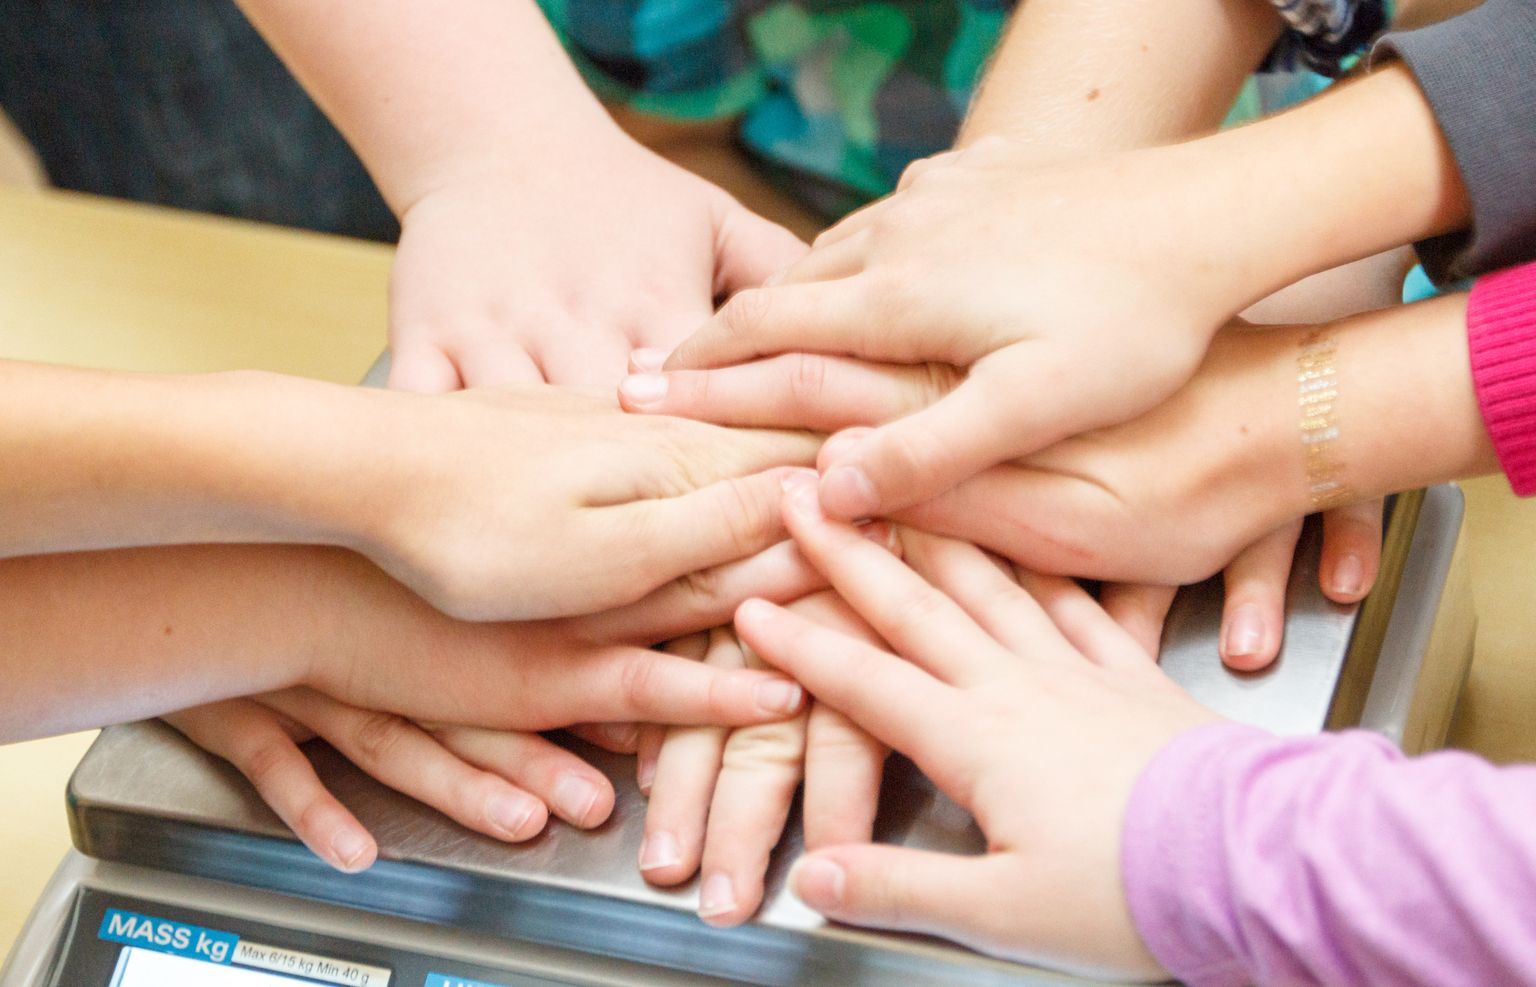 Õpilased, käed, koostöö, lapsed, sõrmed, klass

Foto: Arvo Meeks/Valgamaalane